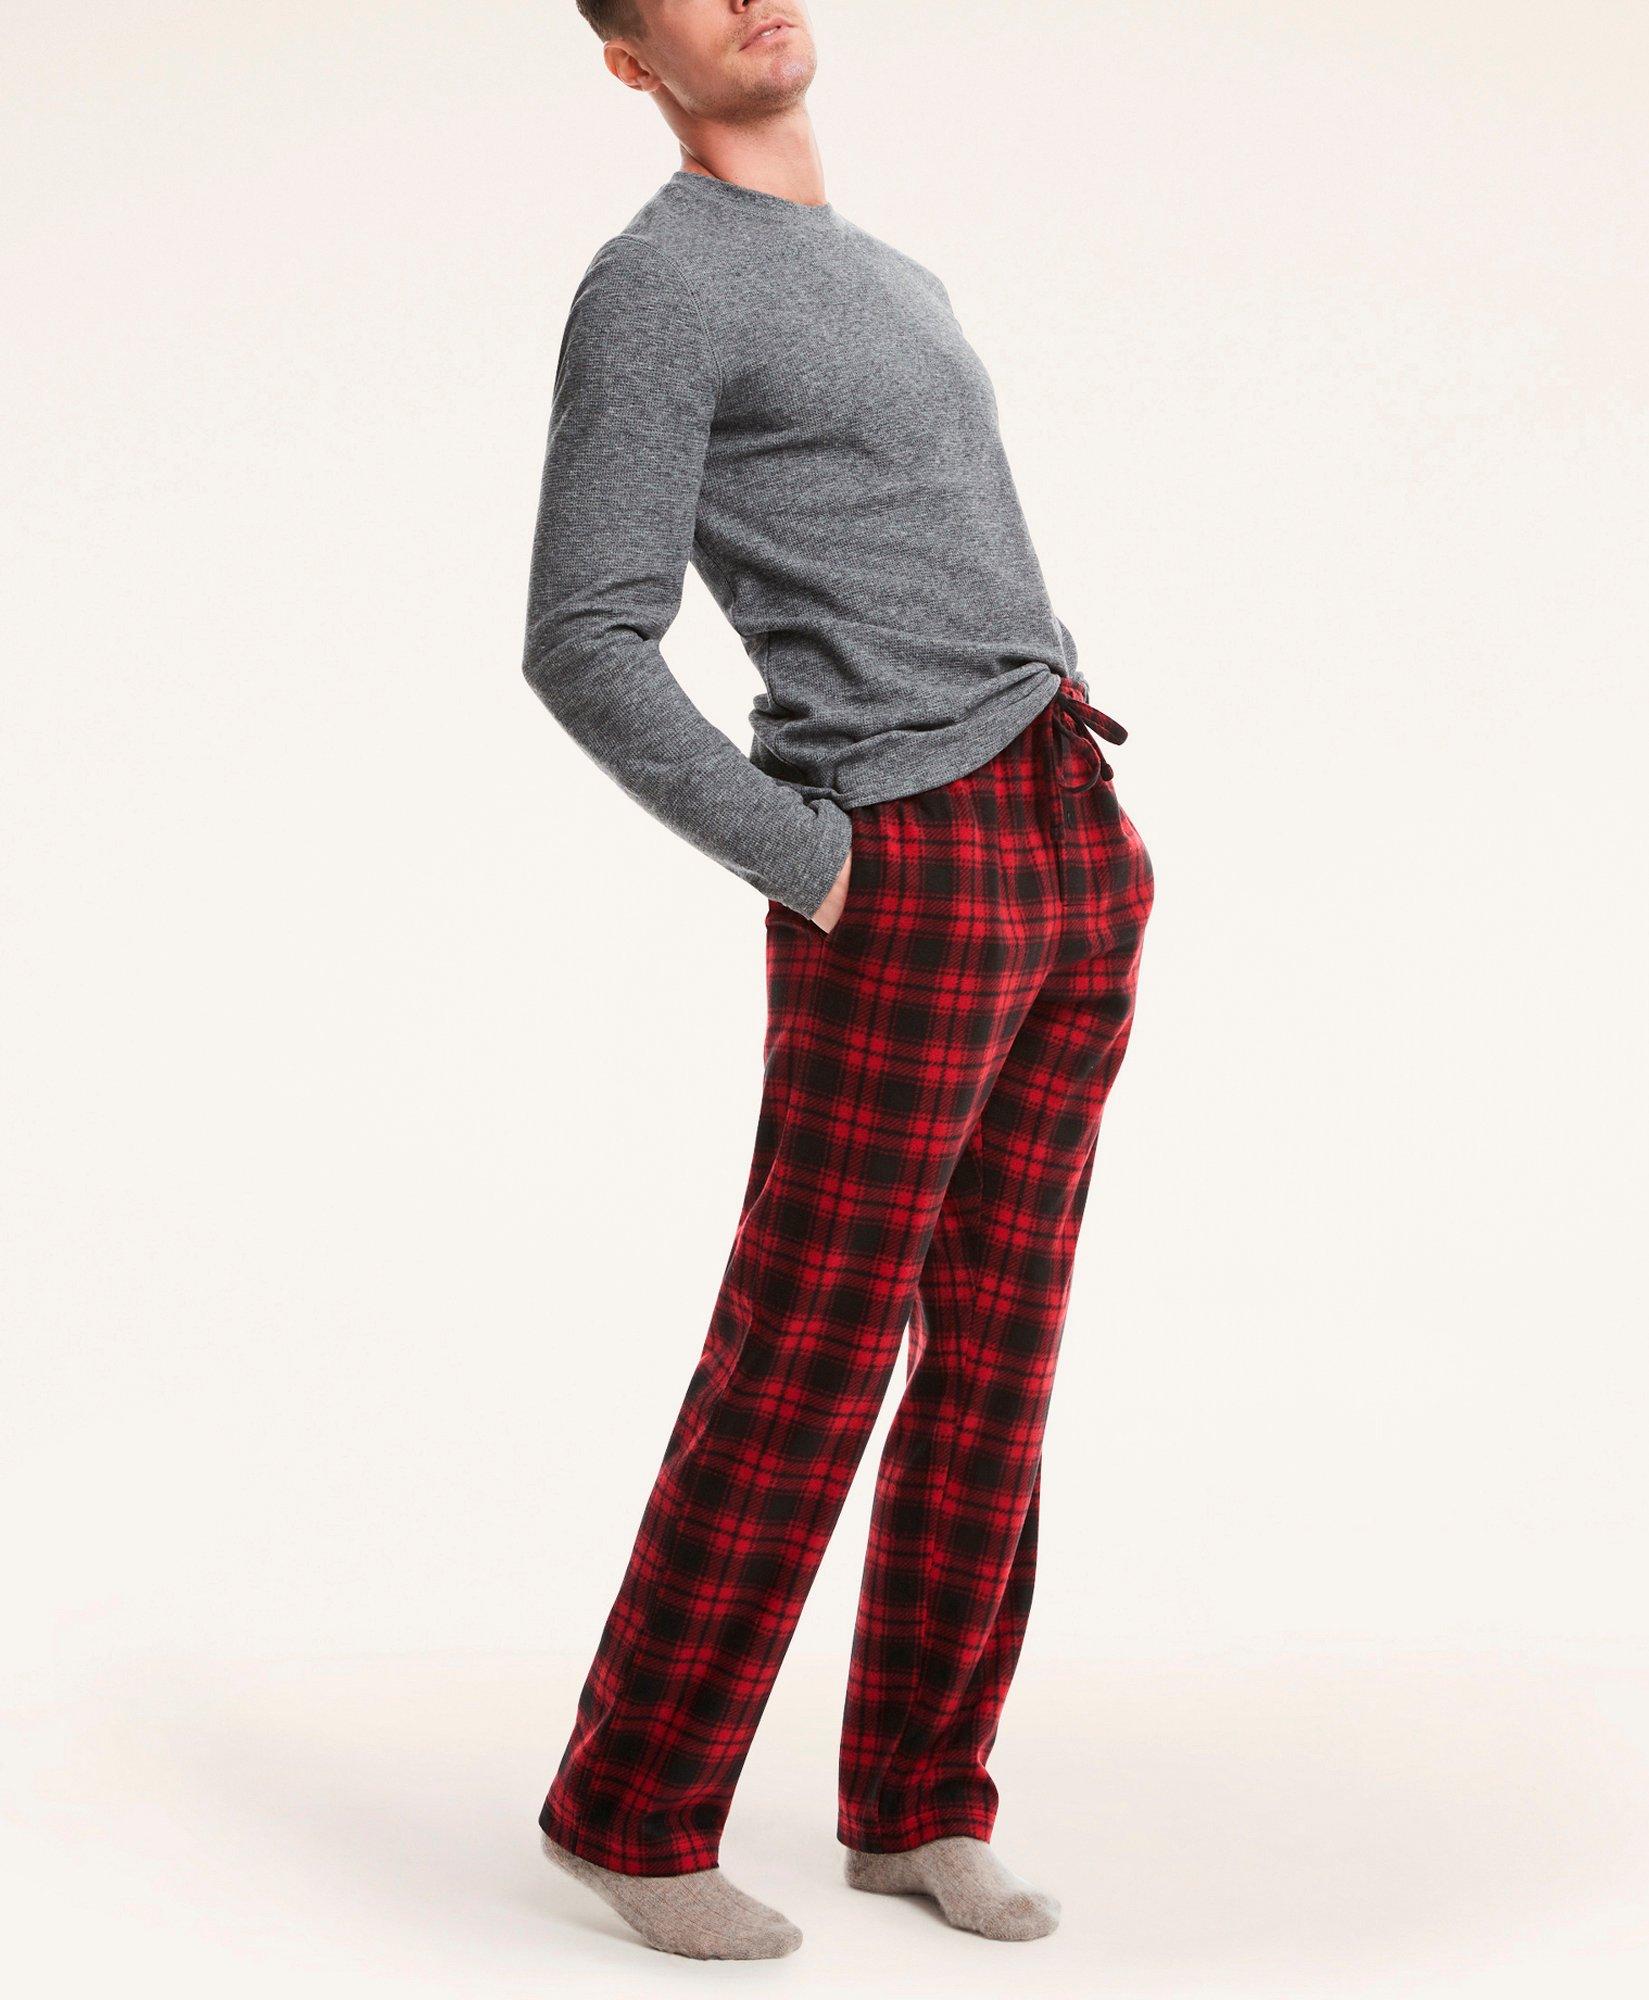 Black And Red Checked Fleece Pajama Pants